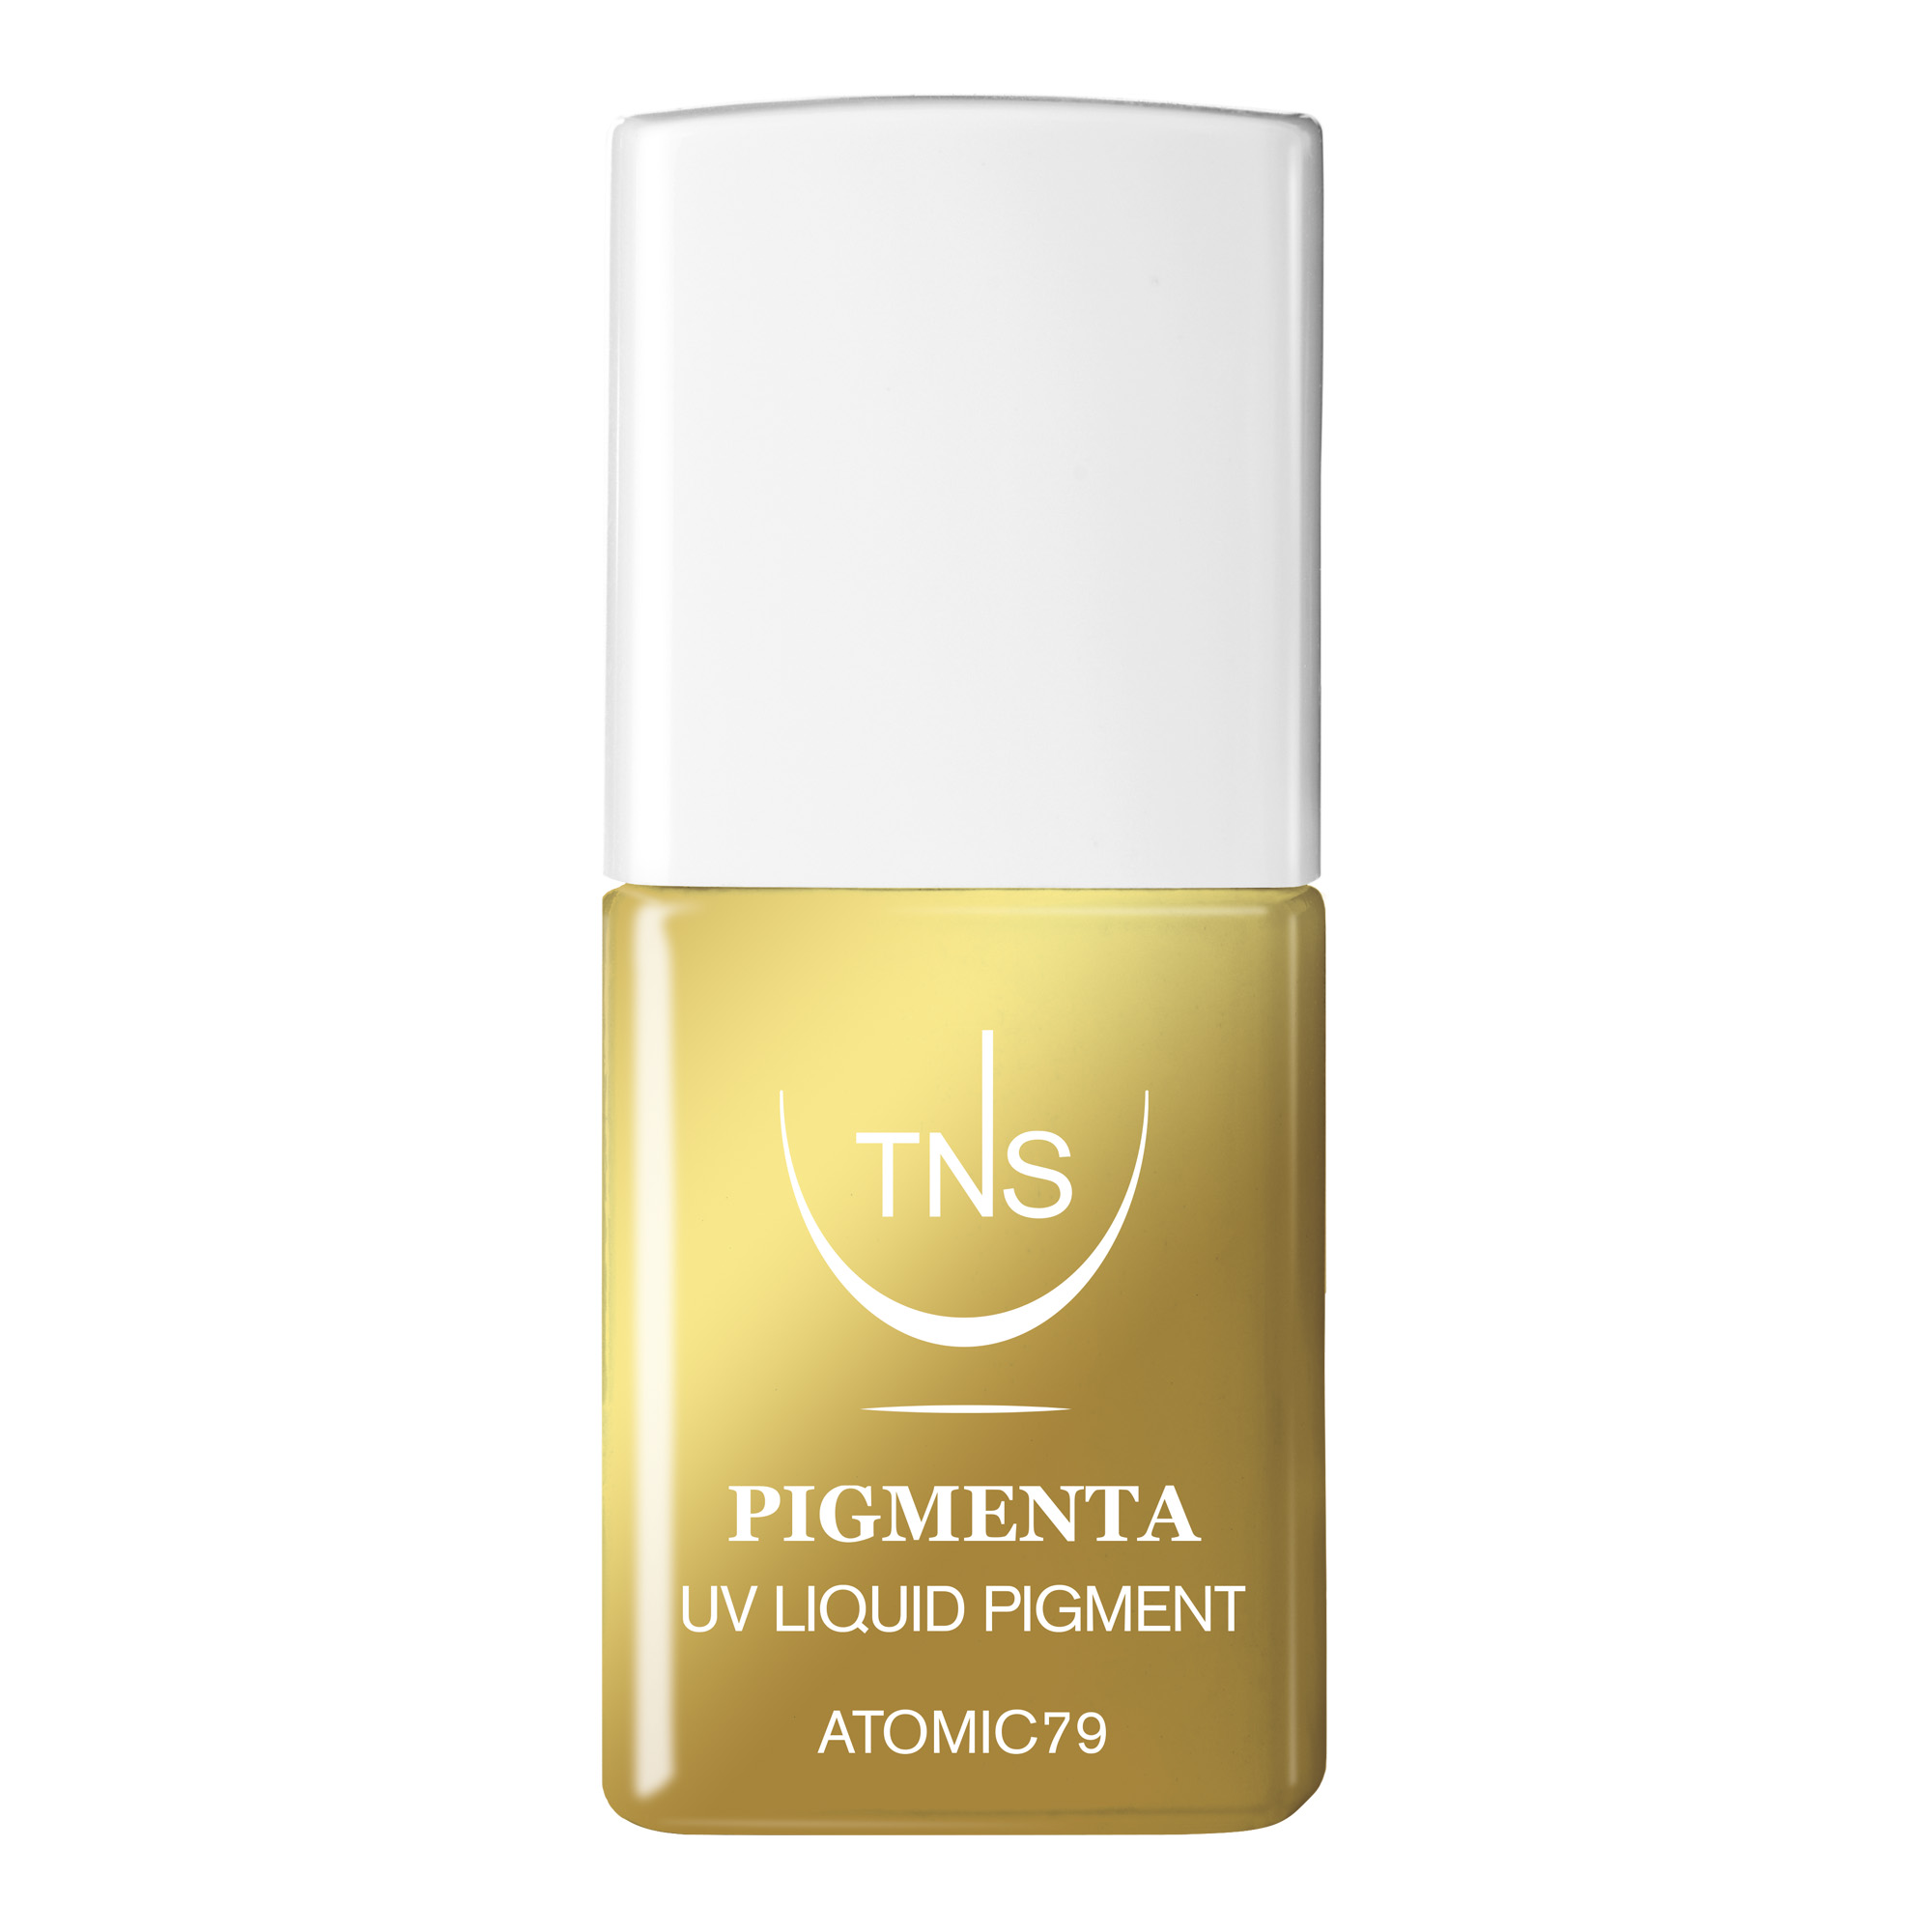 UV Flüssigpigment Atomic 79 gold 10 ml Pigmenta TNS